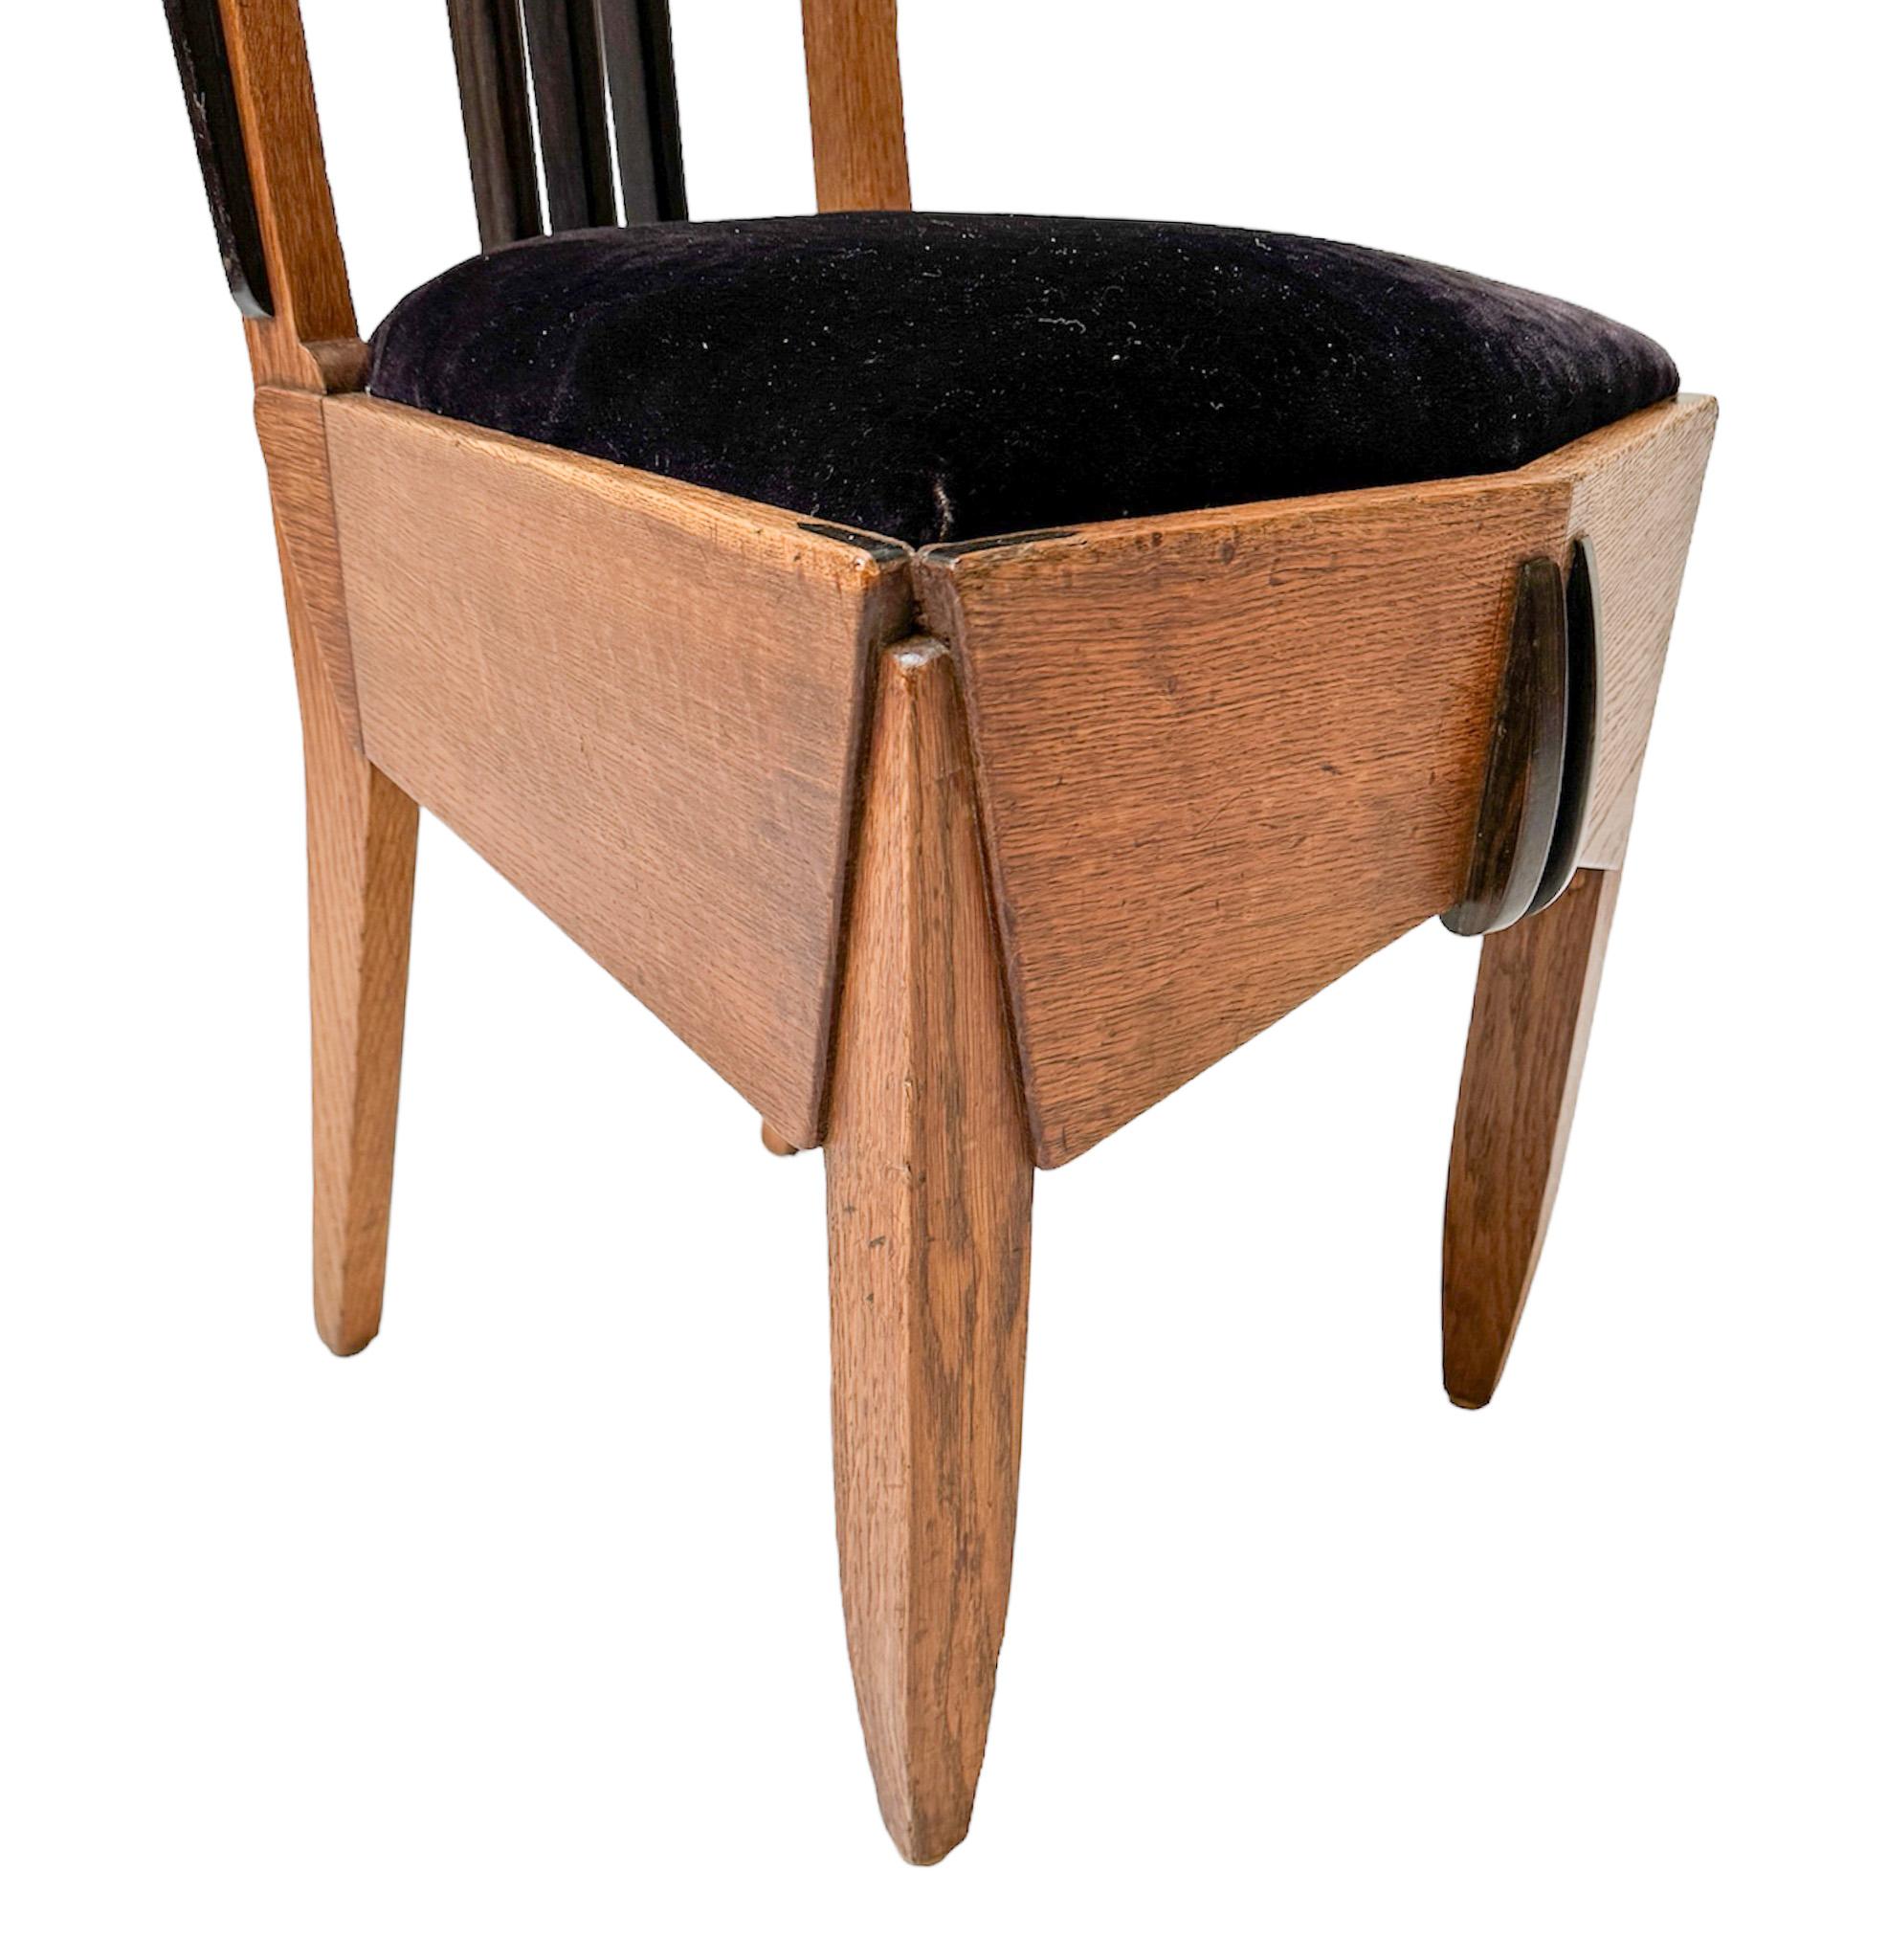 Oak Art Deco Amsterdamse School Side Chair by Hildo Krop, 1920s For Sale 2